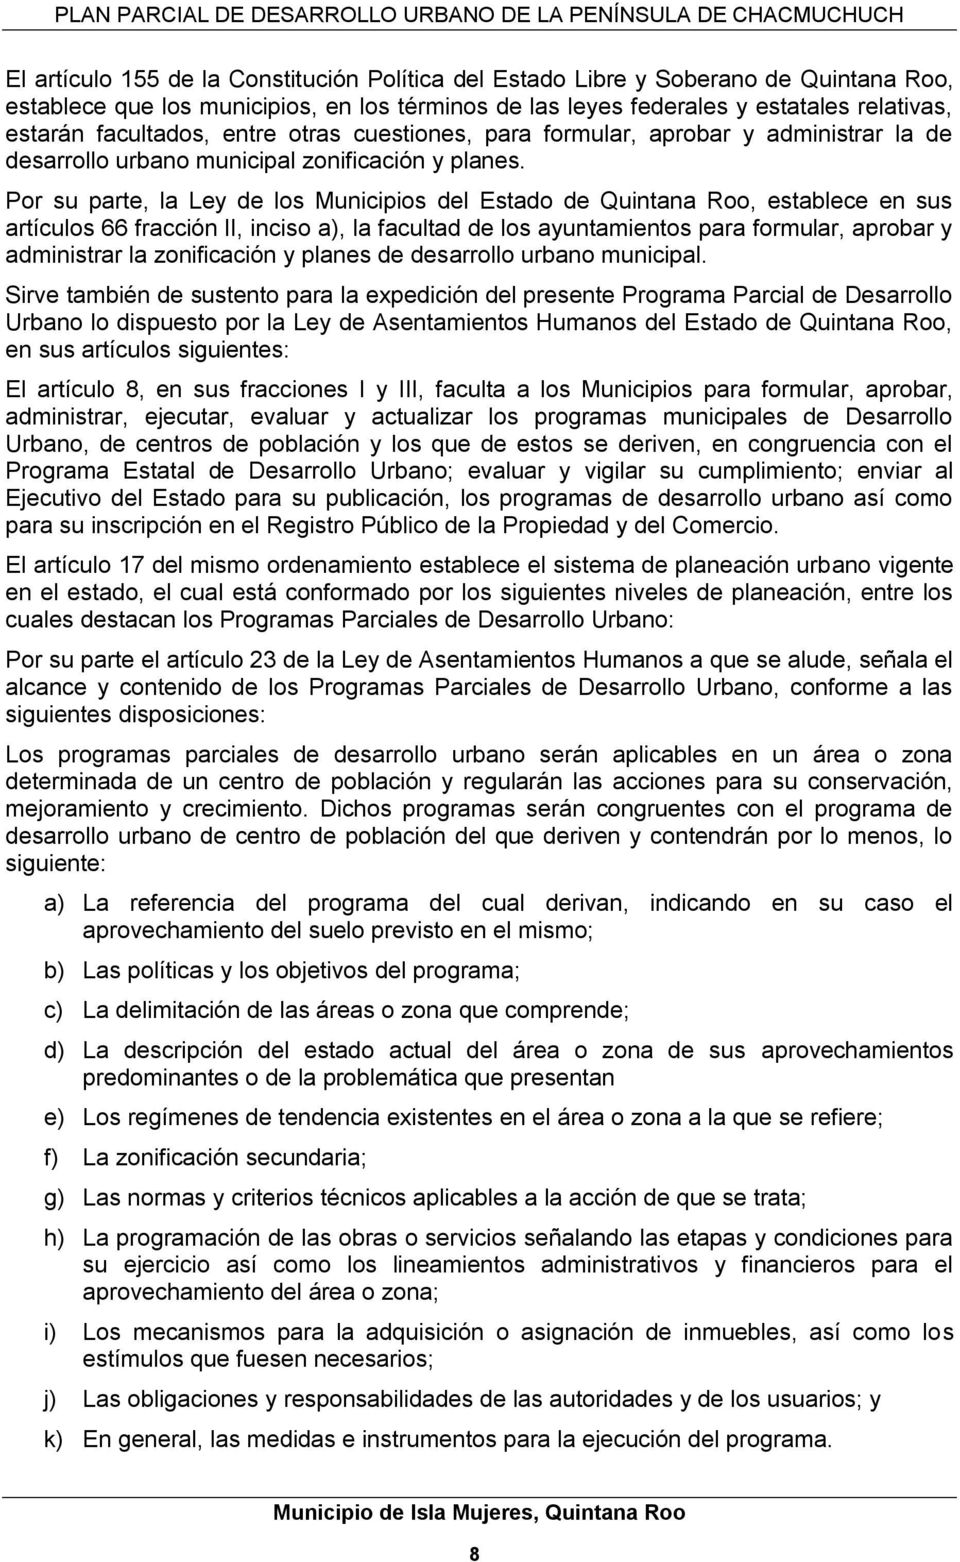 Por su parte, la Ley de los Municipios del Estado de Quintana Roo, establece en sus artículos 66 fracción II, inciso a), la facultad de los ayuntamientos para formular, aprobar y administrar la